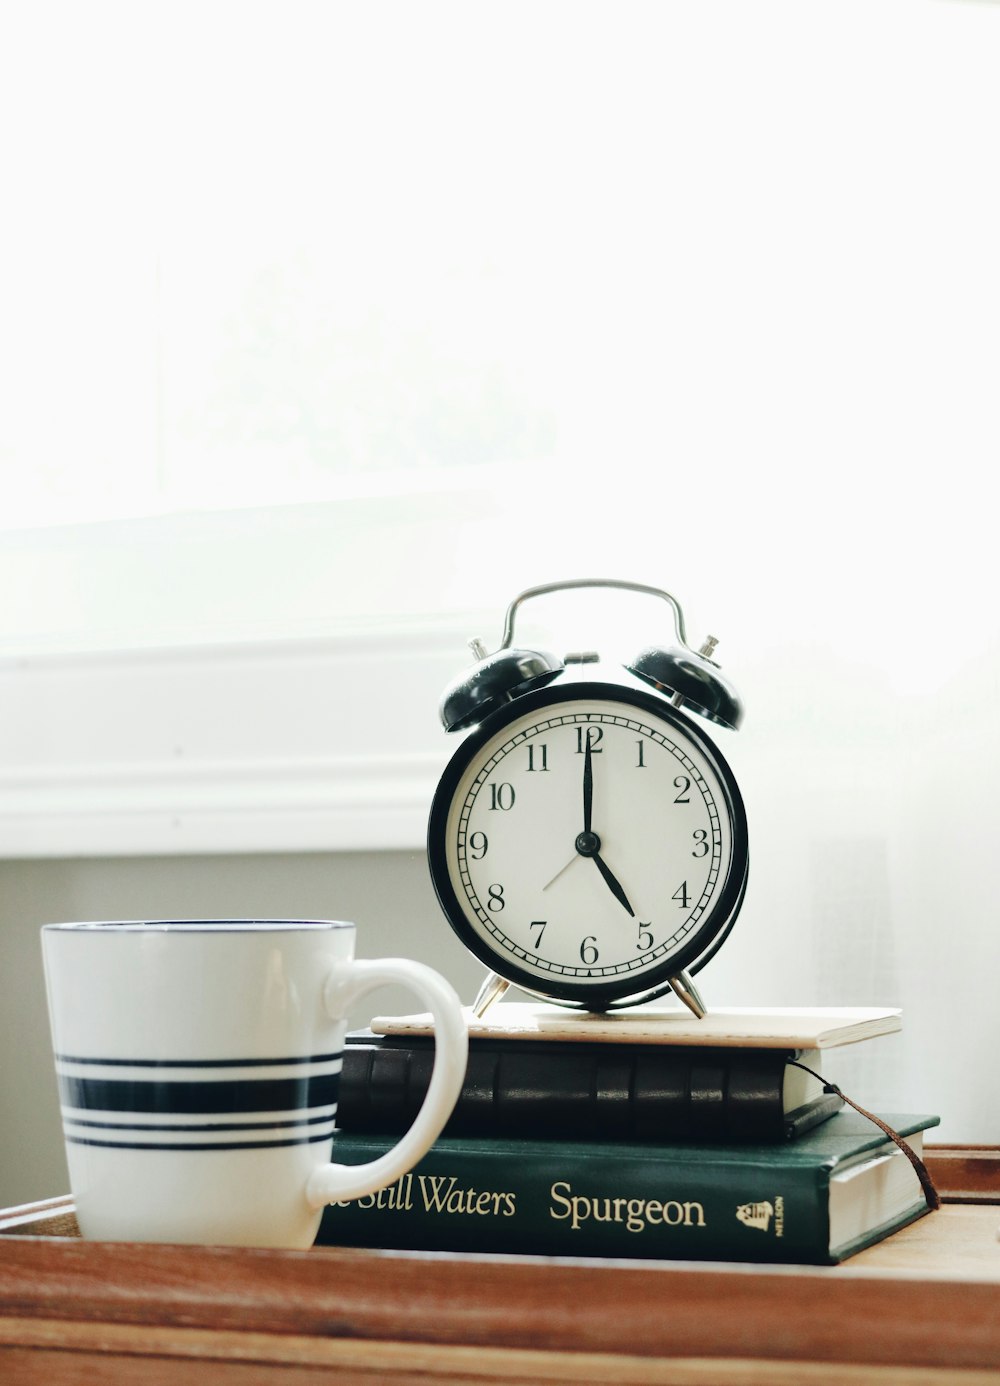 Taza de cerámica blanca junto a reloj despertador analógico blanco y negro